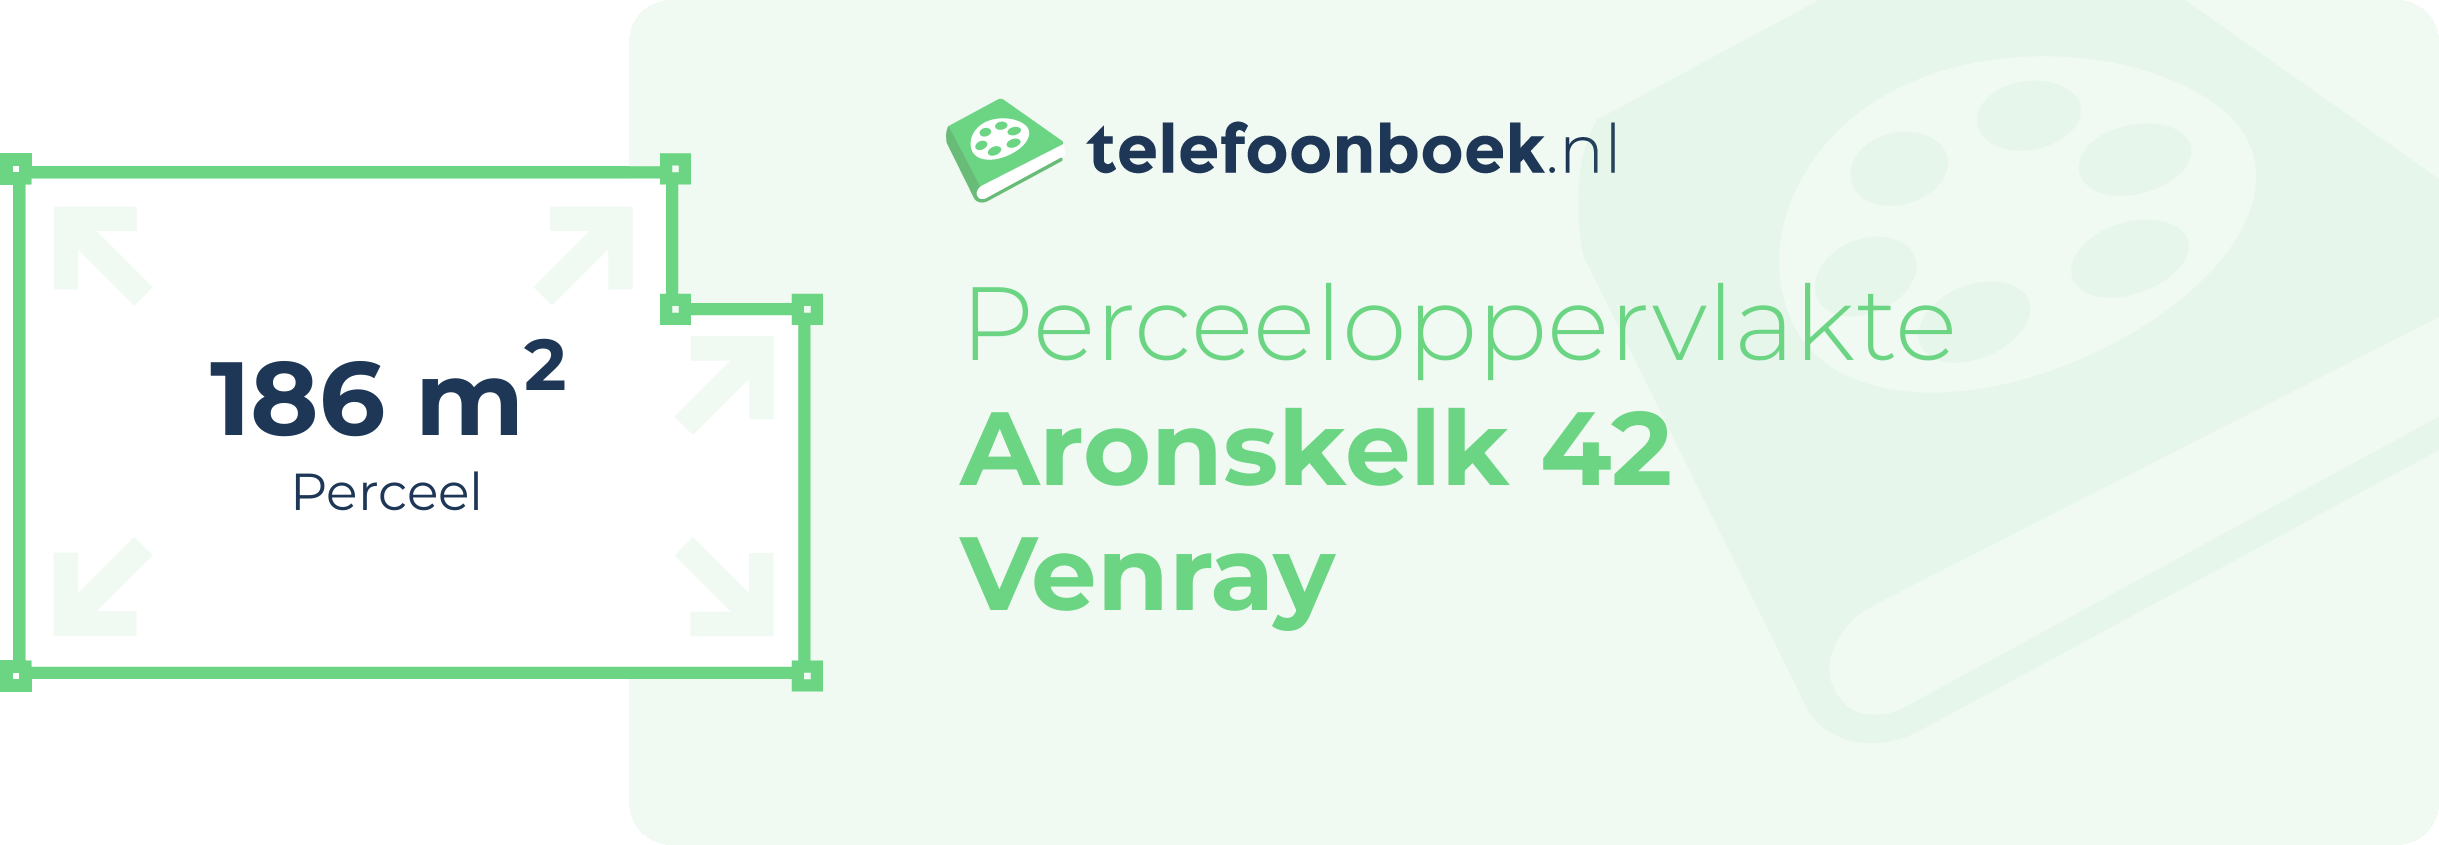 Perceeloppervlakte Aronskelk 42 Venray